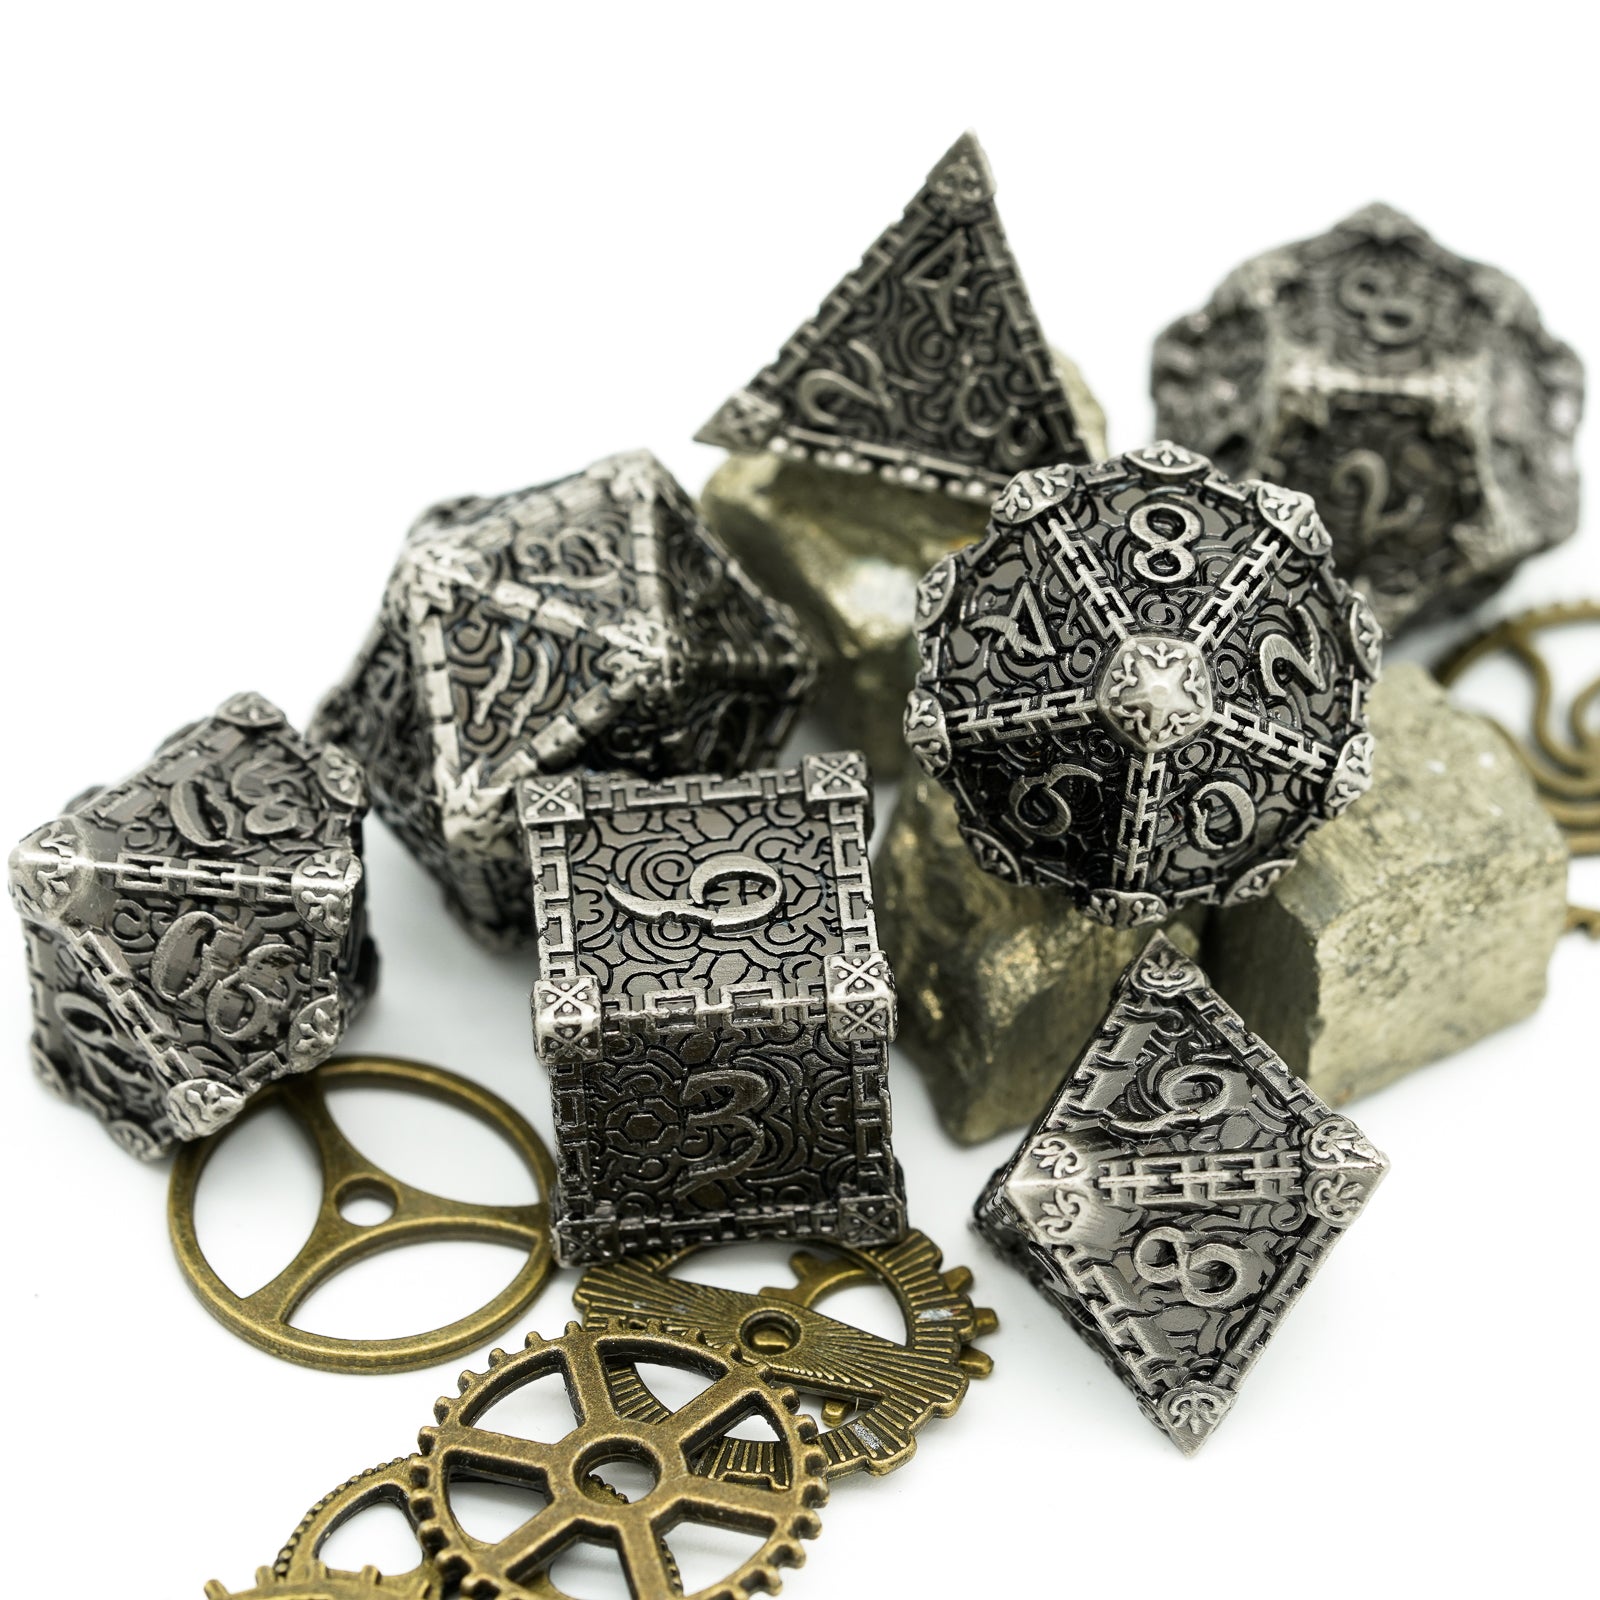 7 piece metal dice set, stone color